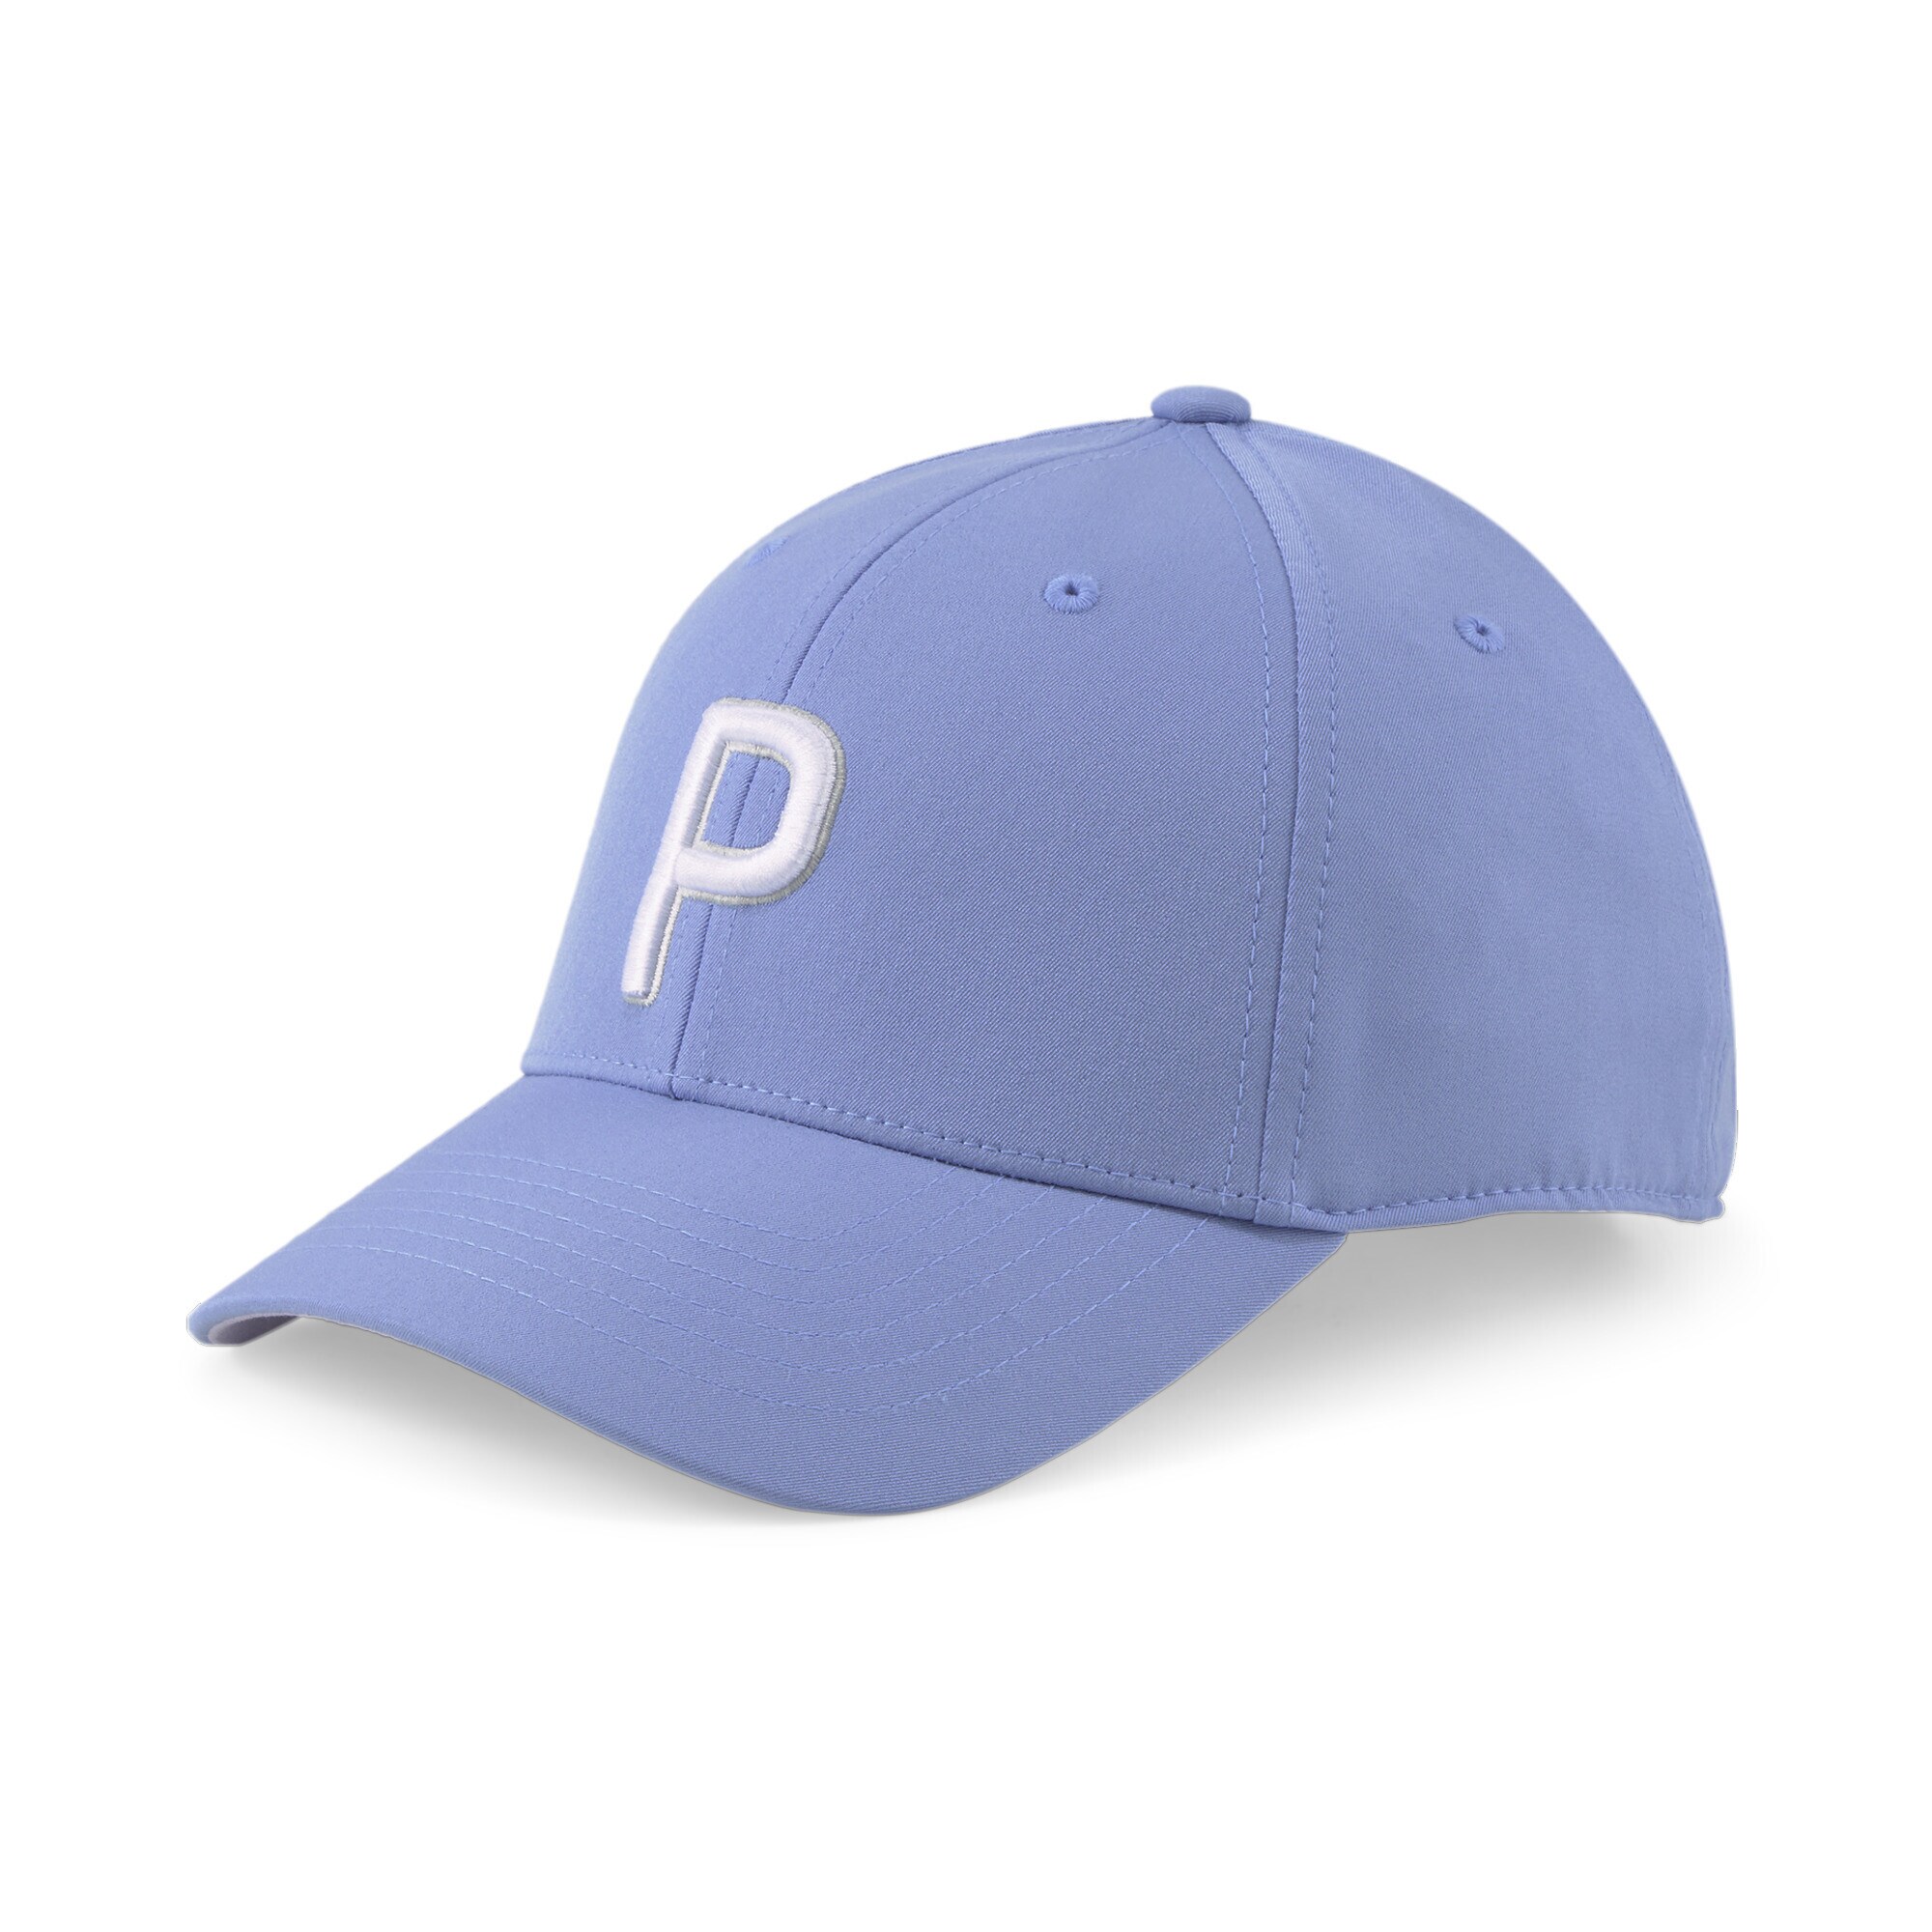 PUMA Sportcap violettblau / wei